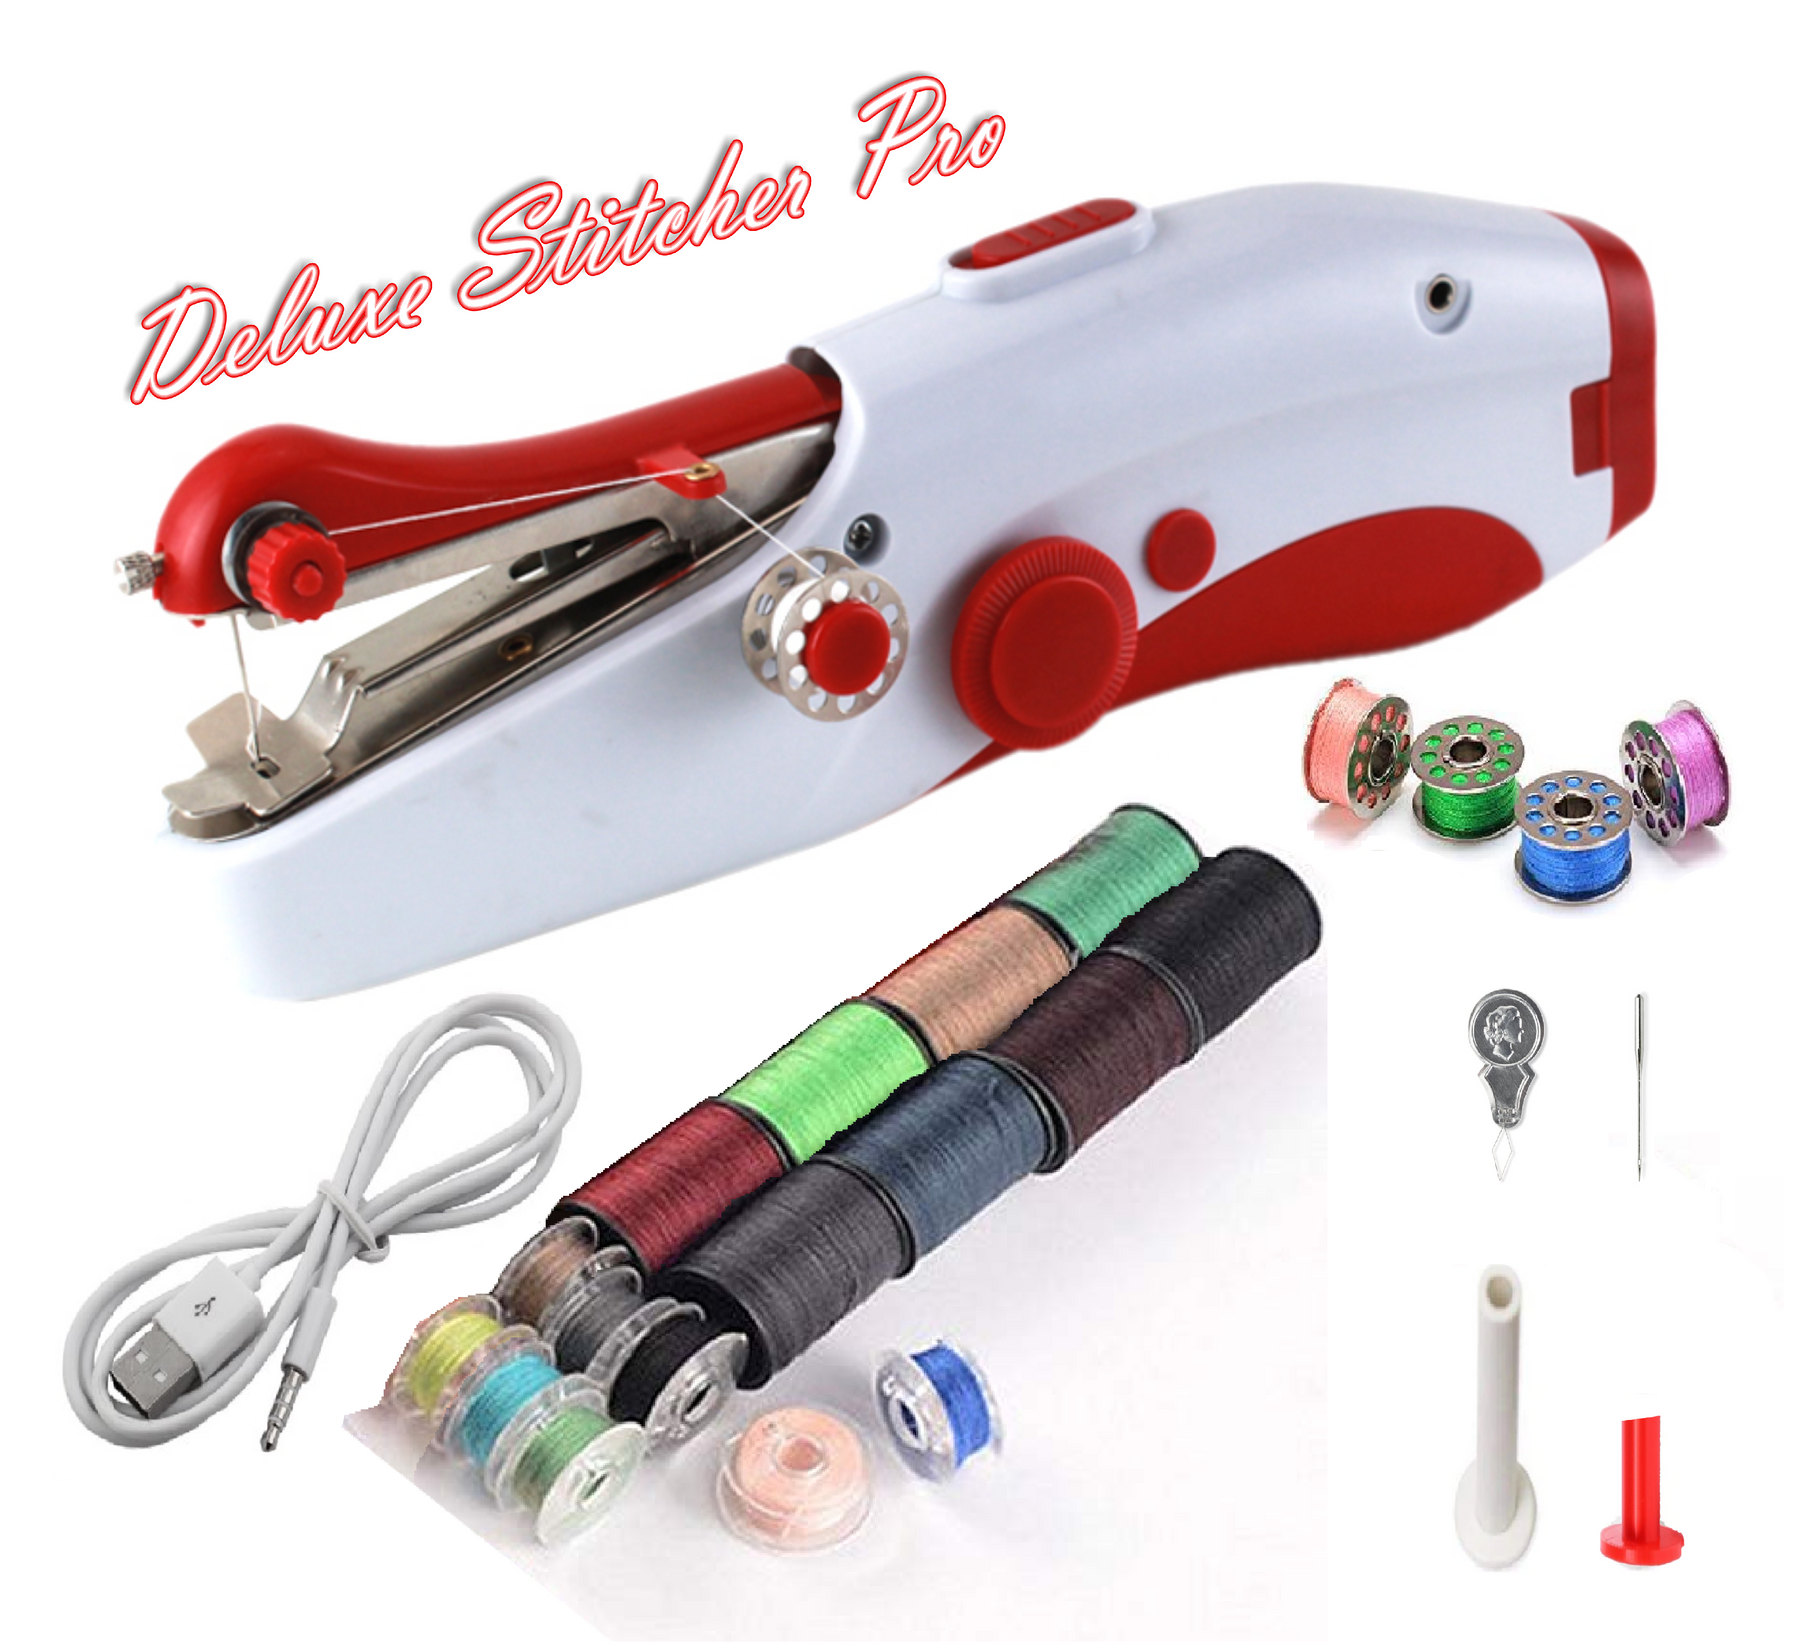 Deluxe Stitcher Pro - PREMIUM Handnaaimachine met USB Kabel + 20 spoelen met garen en extra accessoires